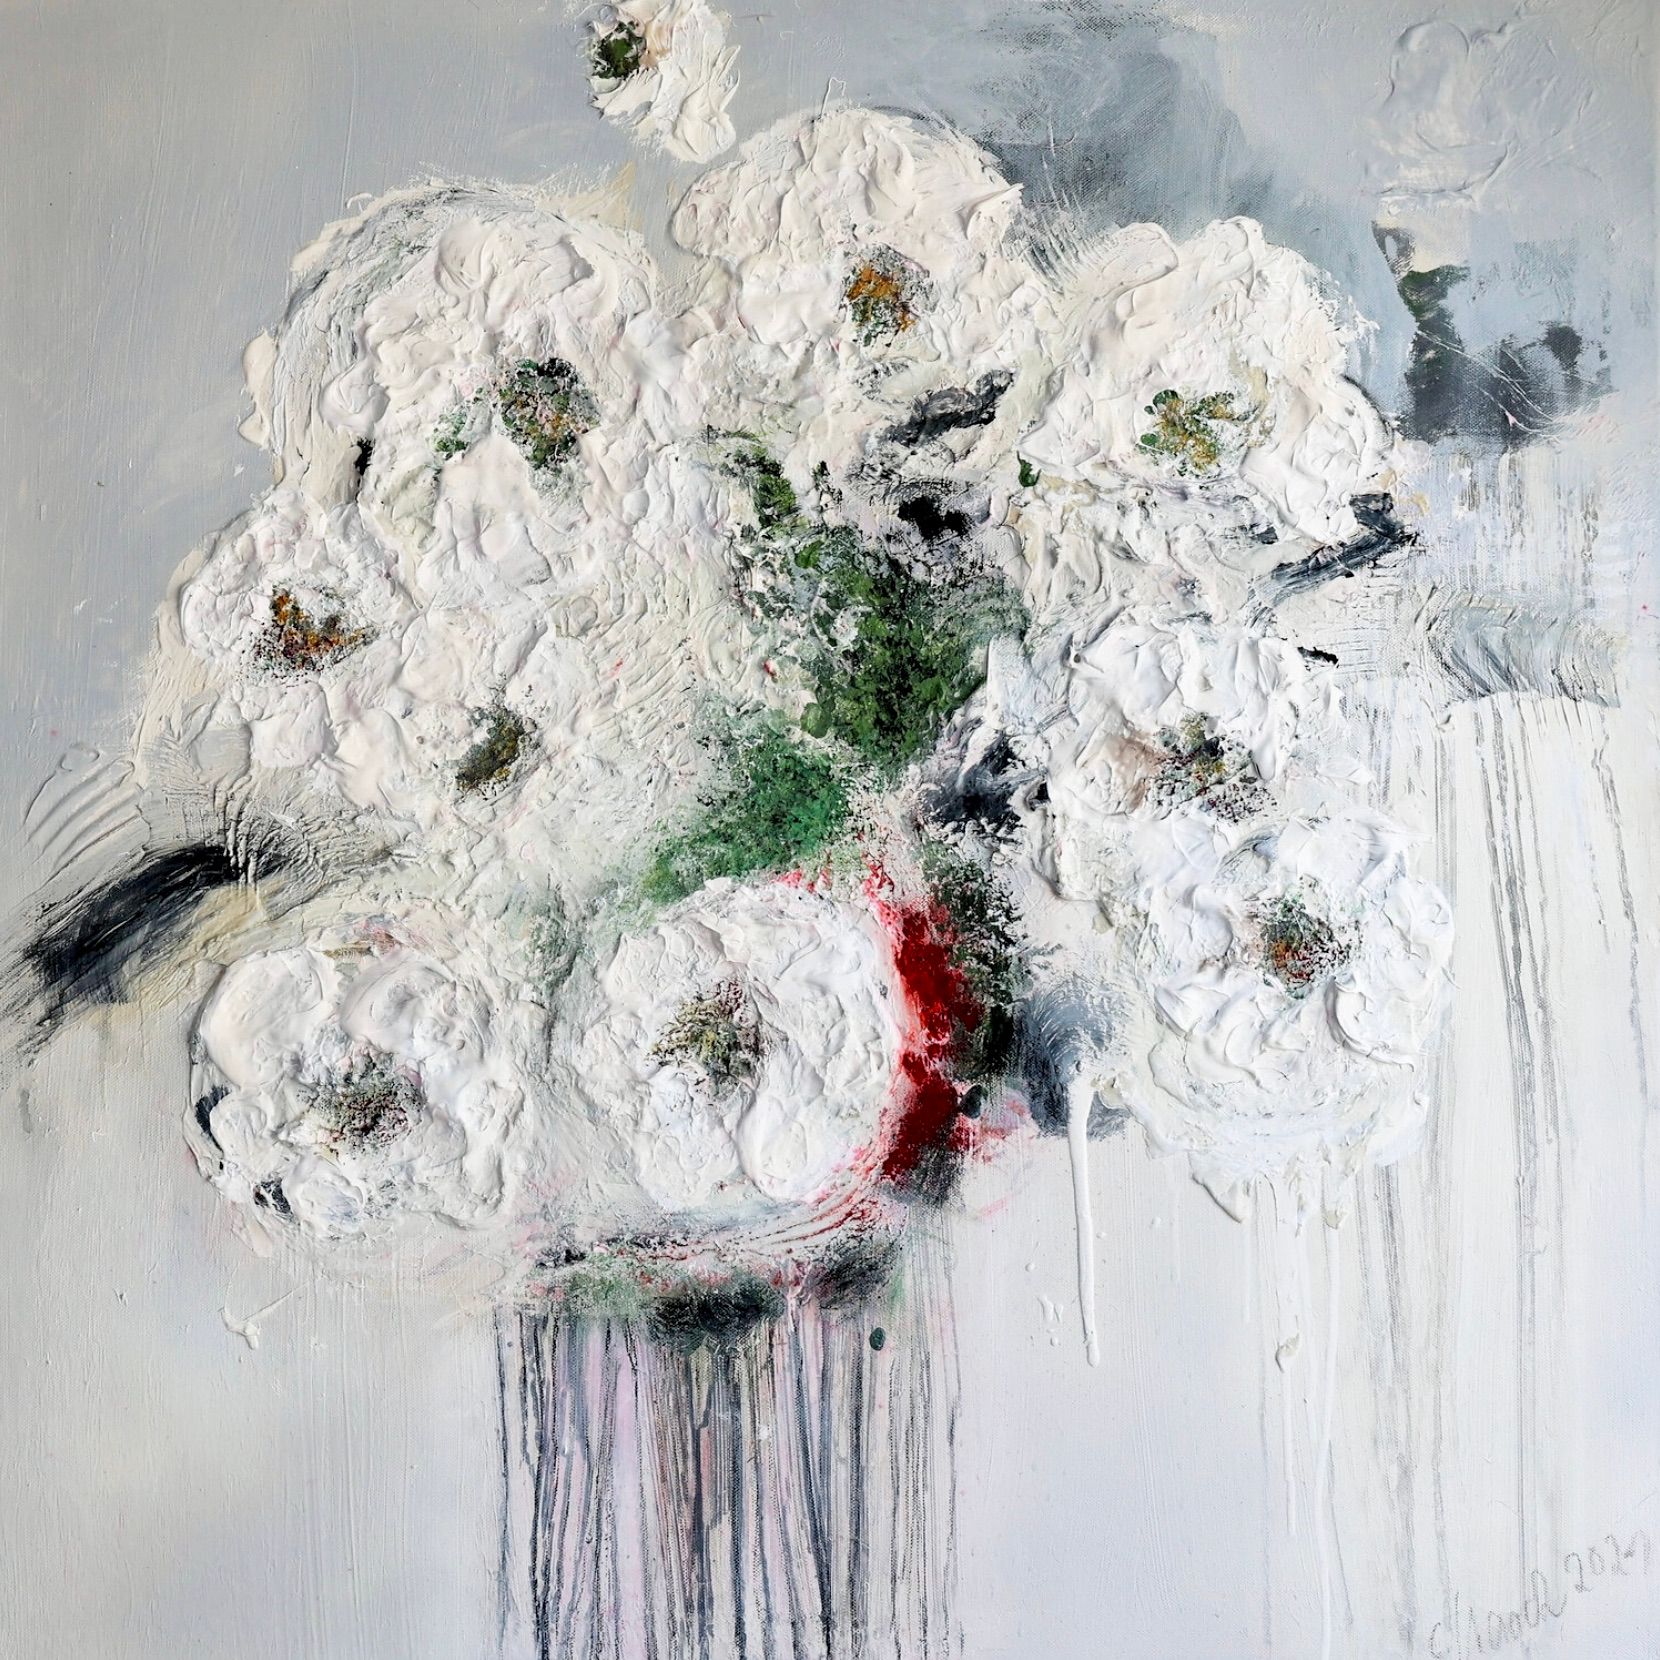 En el cuadro expresionista abstracto de flores "Im Rausch der Blumen 3" de Christa Haack dominan los colores blanco, beige, verde y rojo.